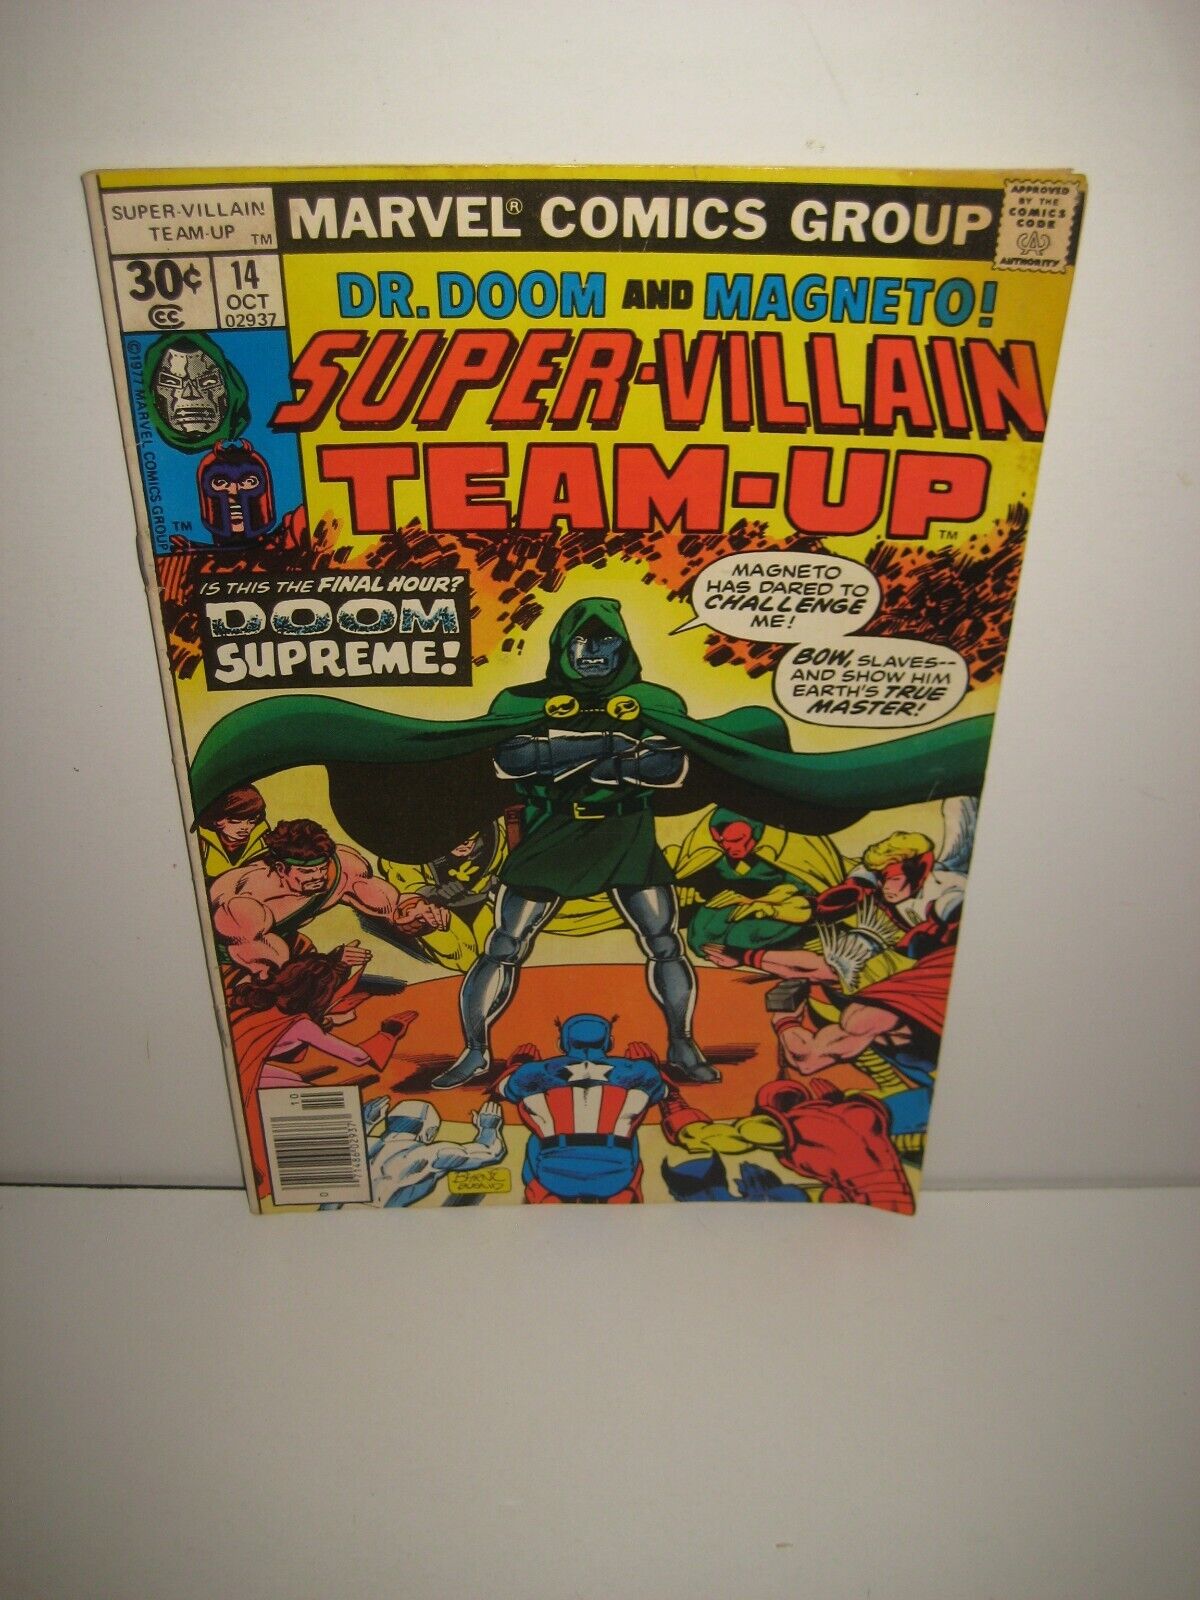 Super-Villain Team-Up #14 - Dr. Doom, Magneto, Avengers Reader